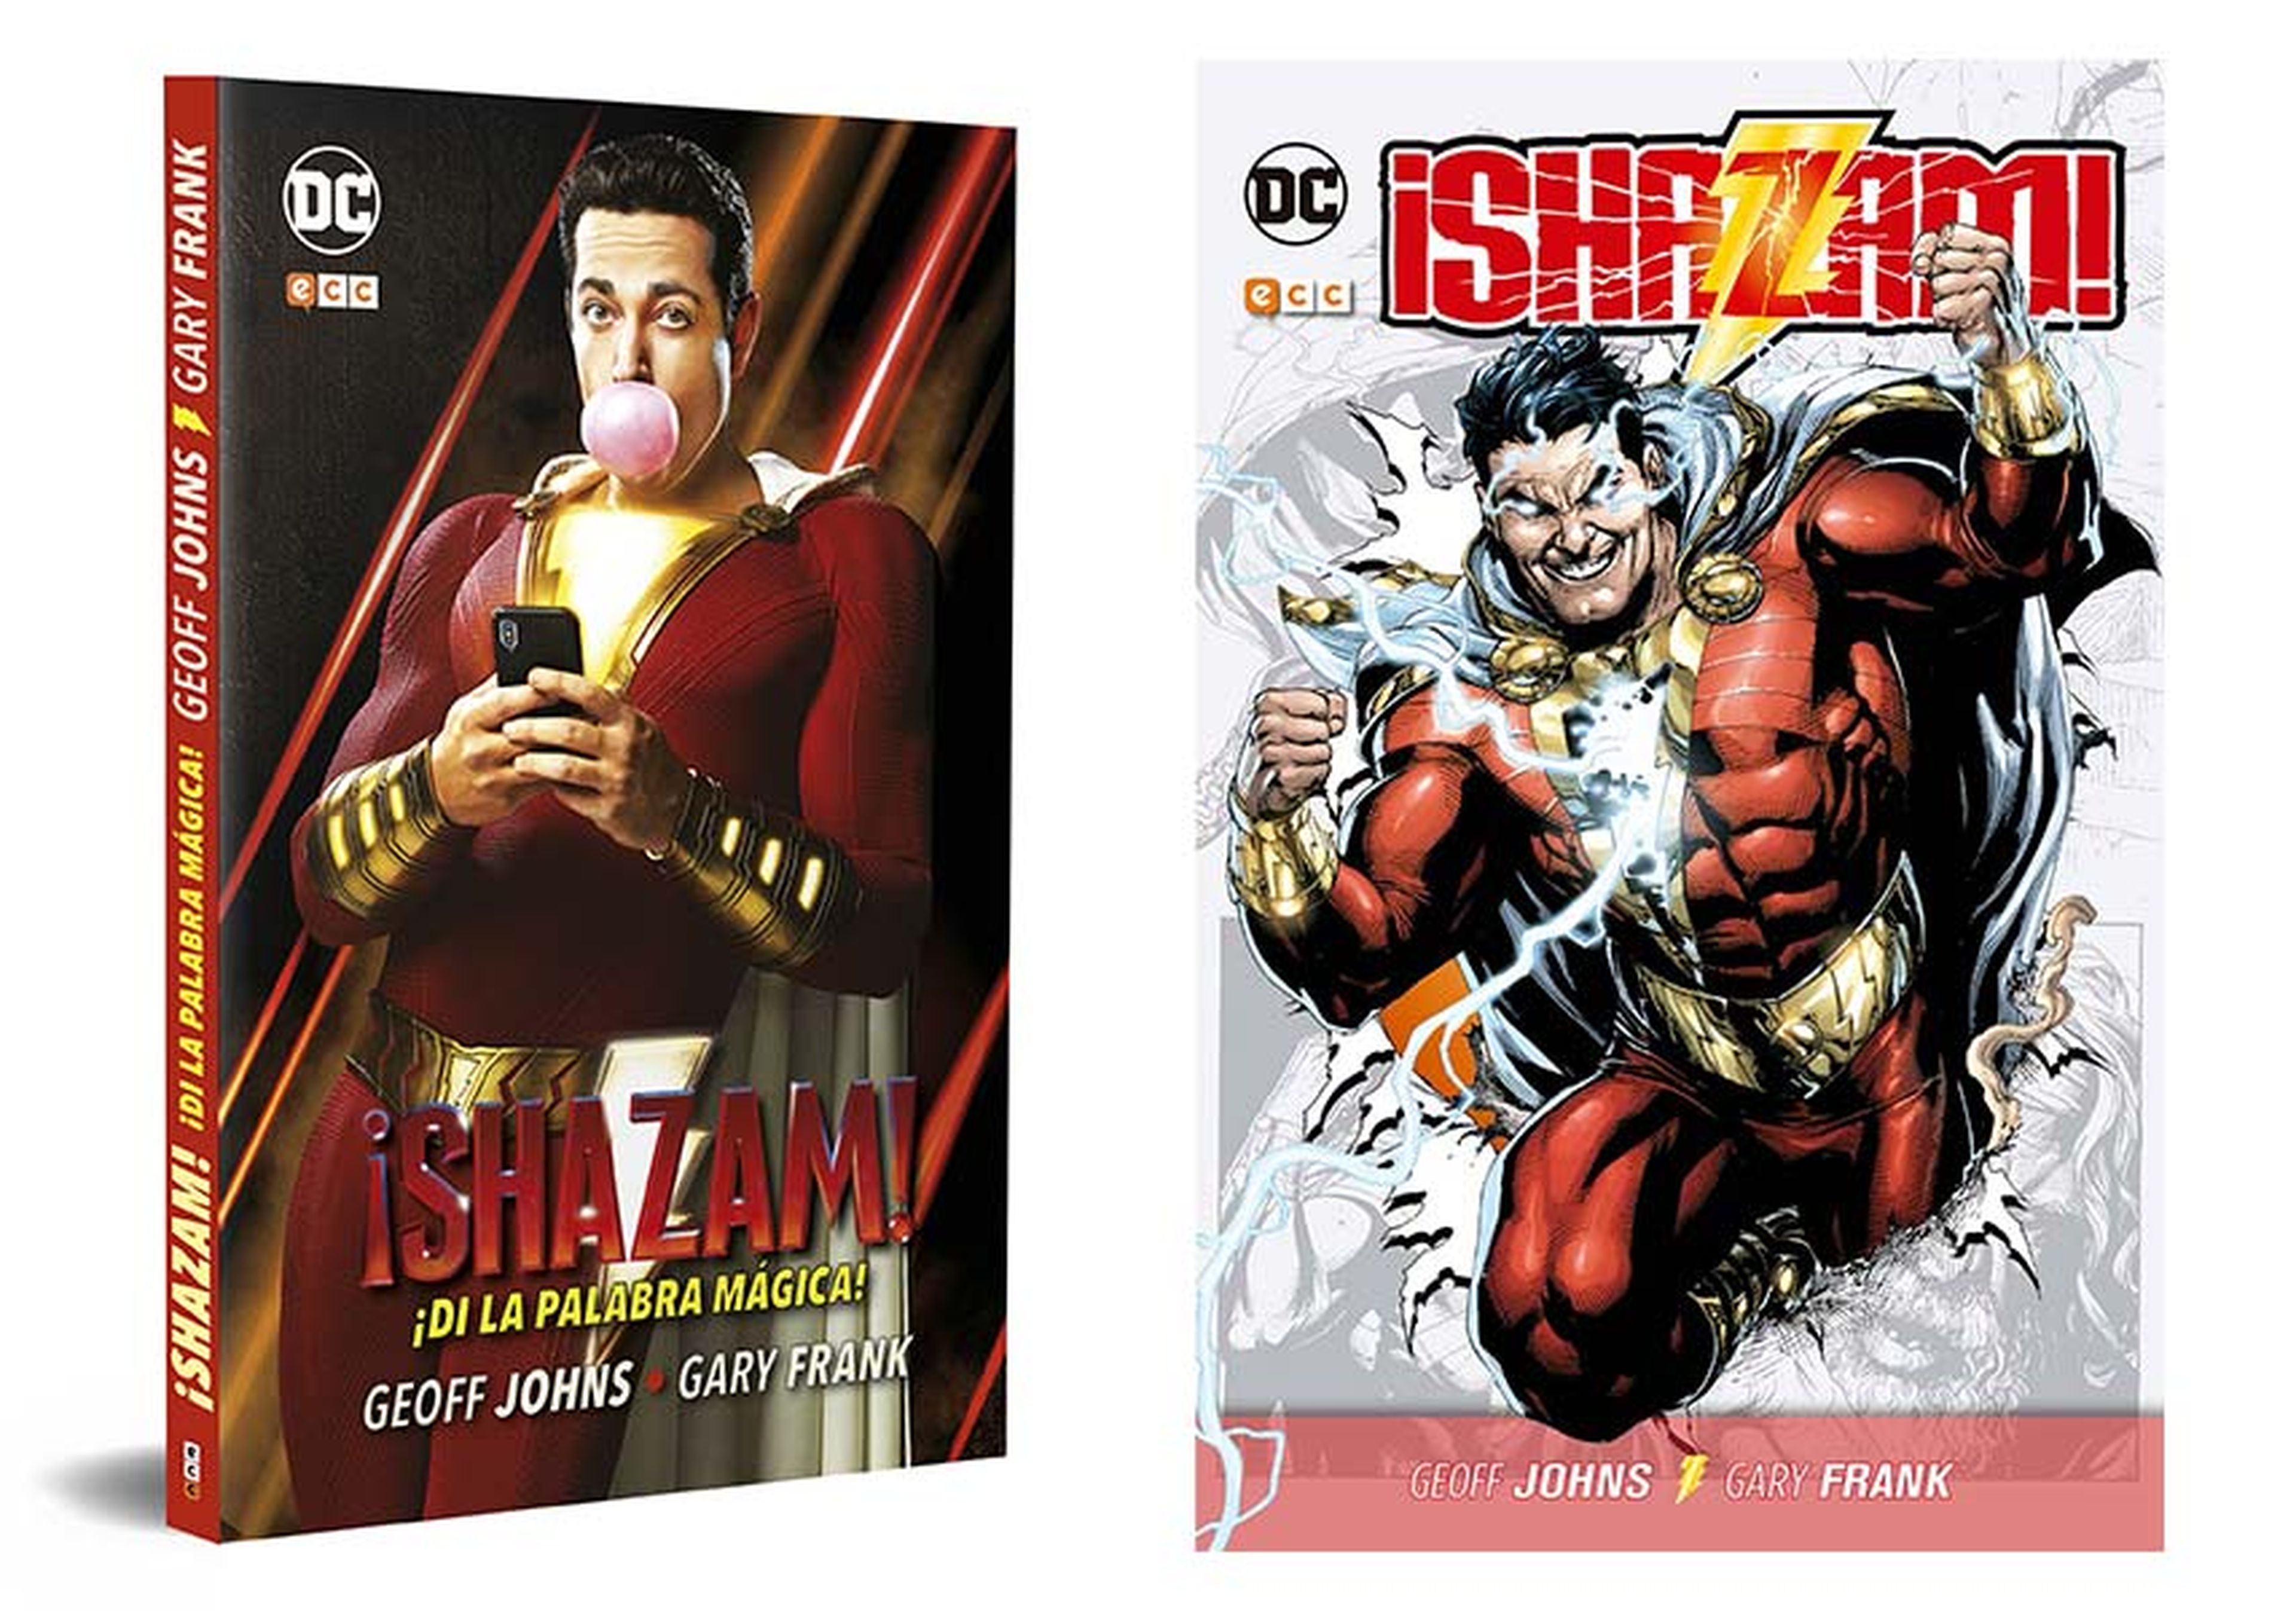 Portadas de Shazam! en sus distintas ediciones españolas de Ecc ediciones